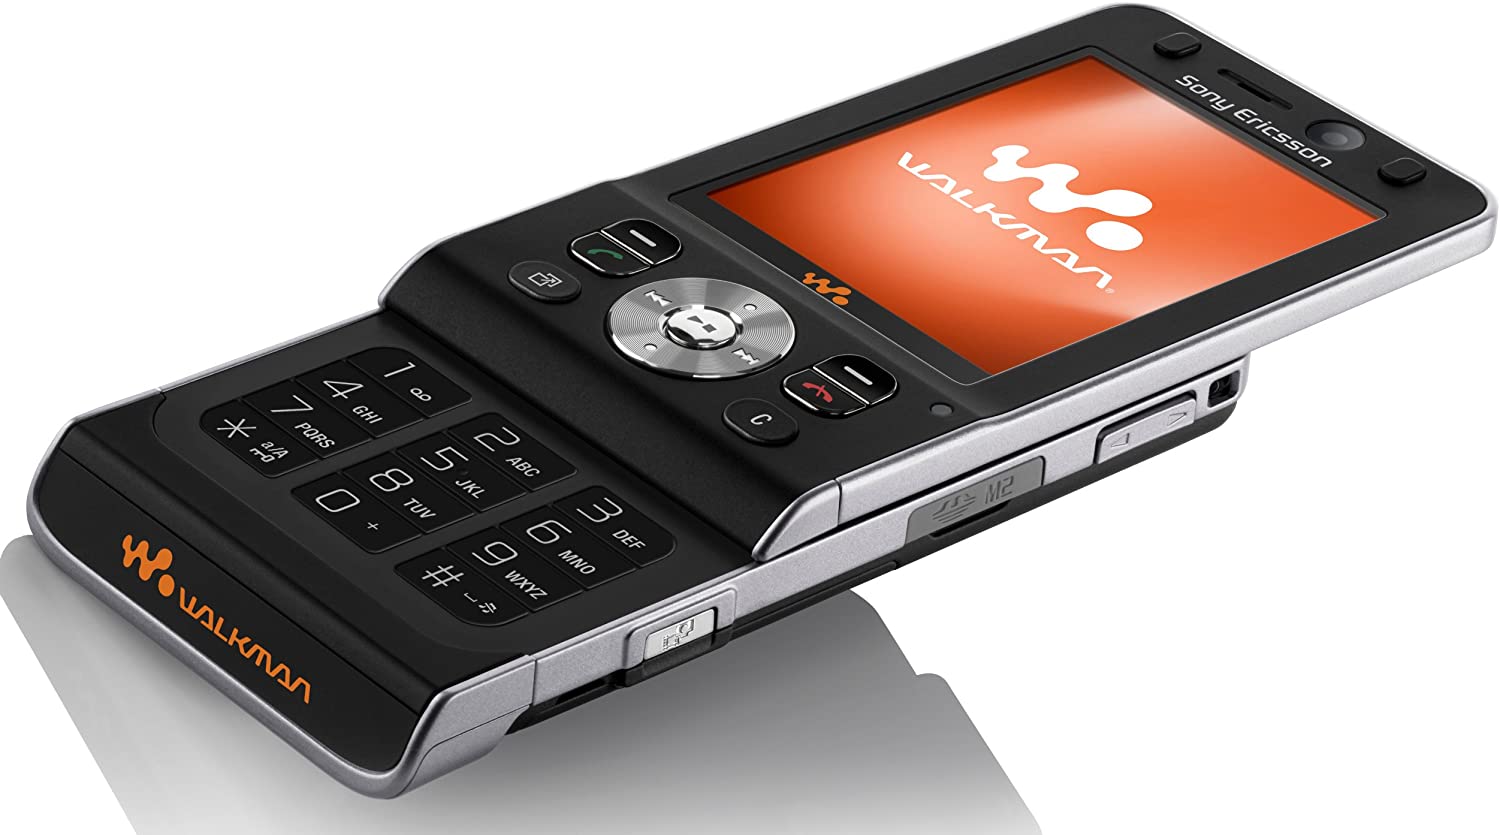 Sony Ericsson W910i Walkman Tasten-Handy Bluetooth 2MP-Kamera MP3 UMTS wie Neu